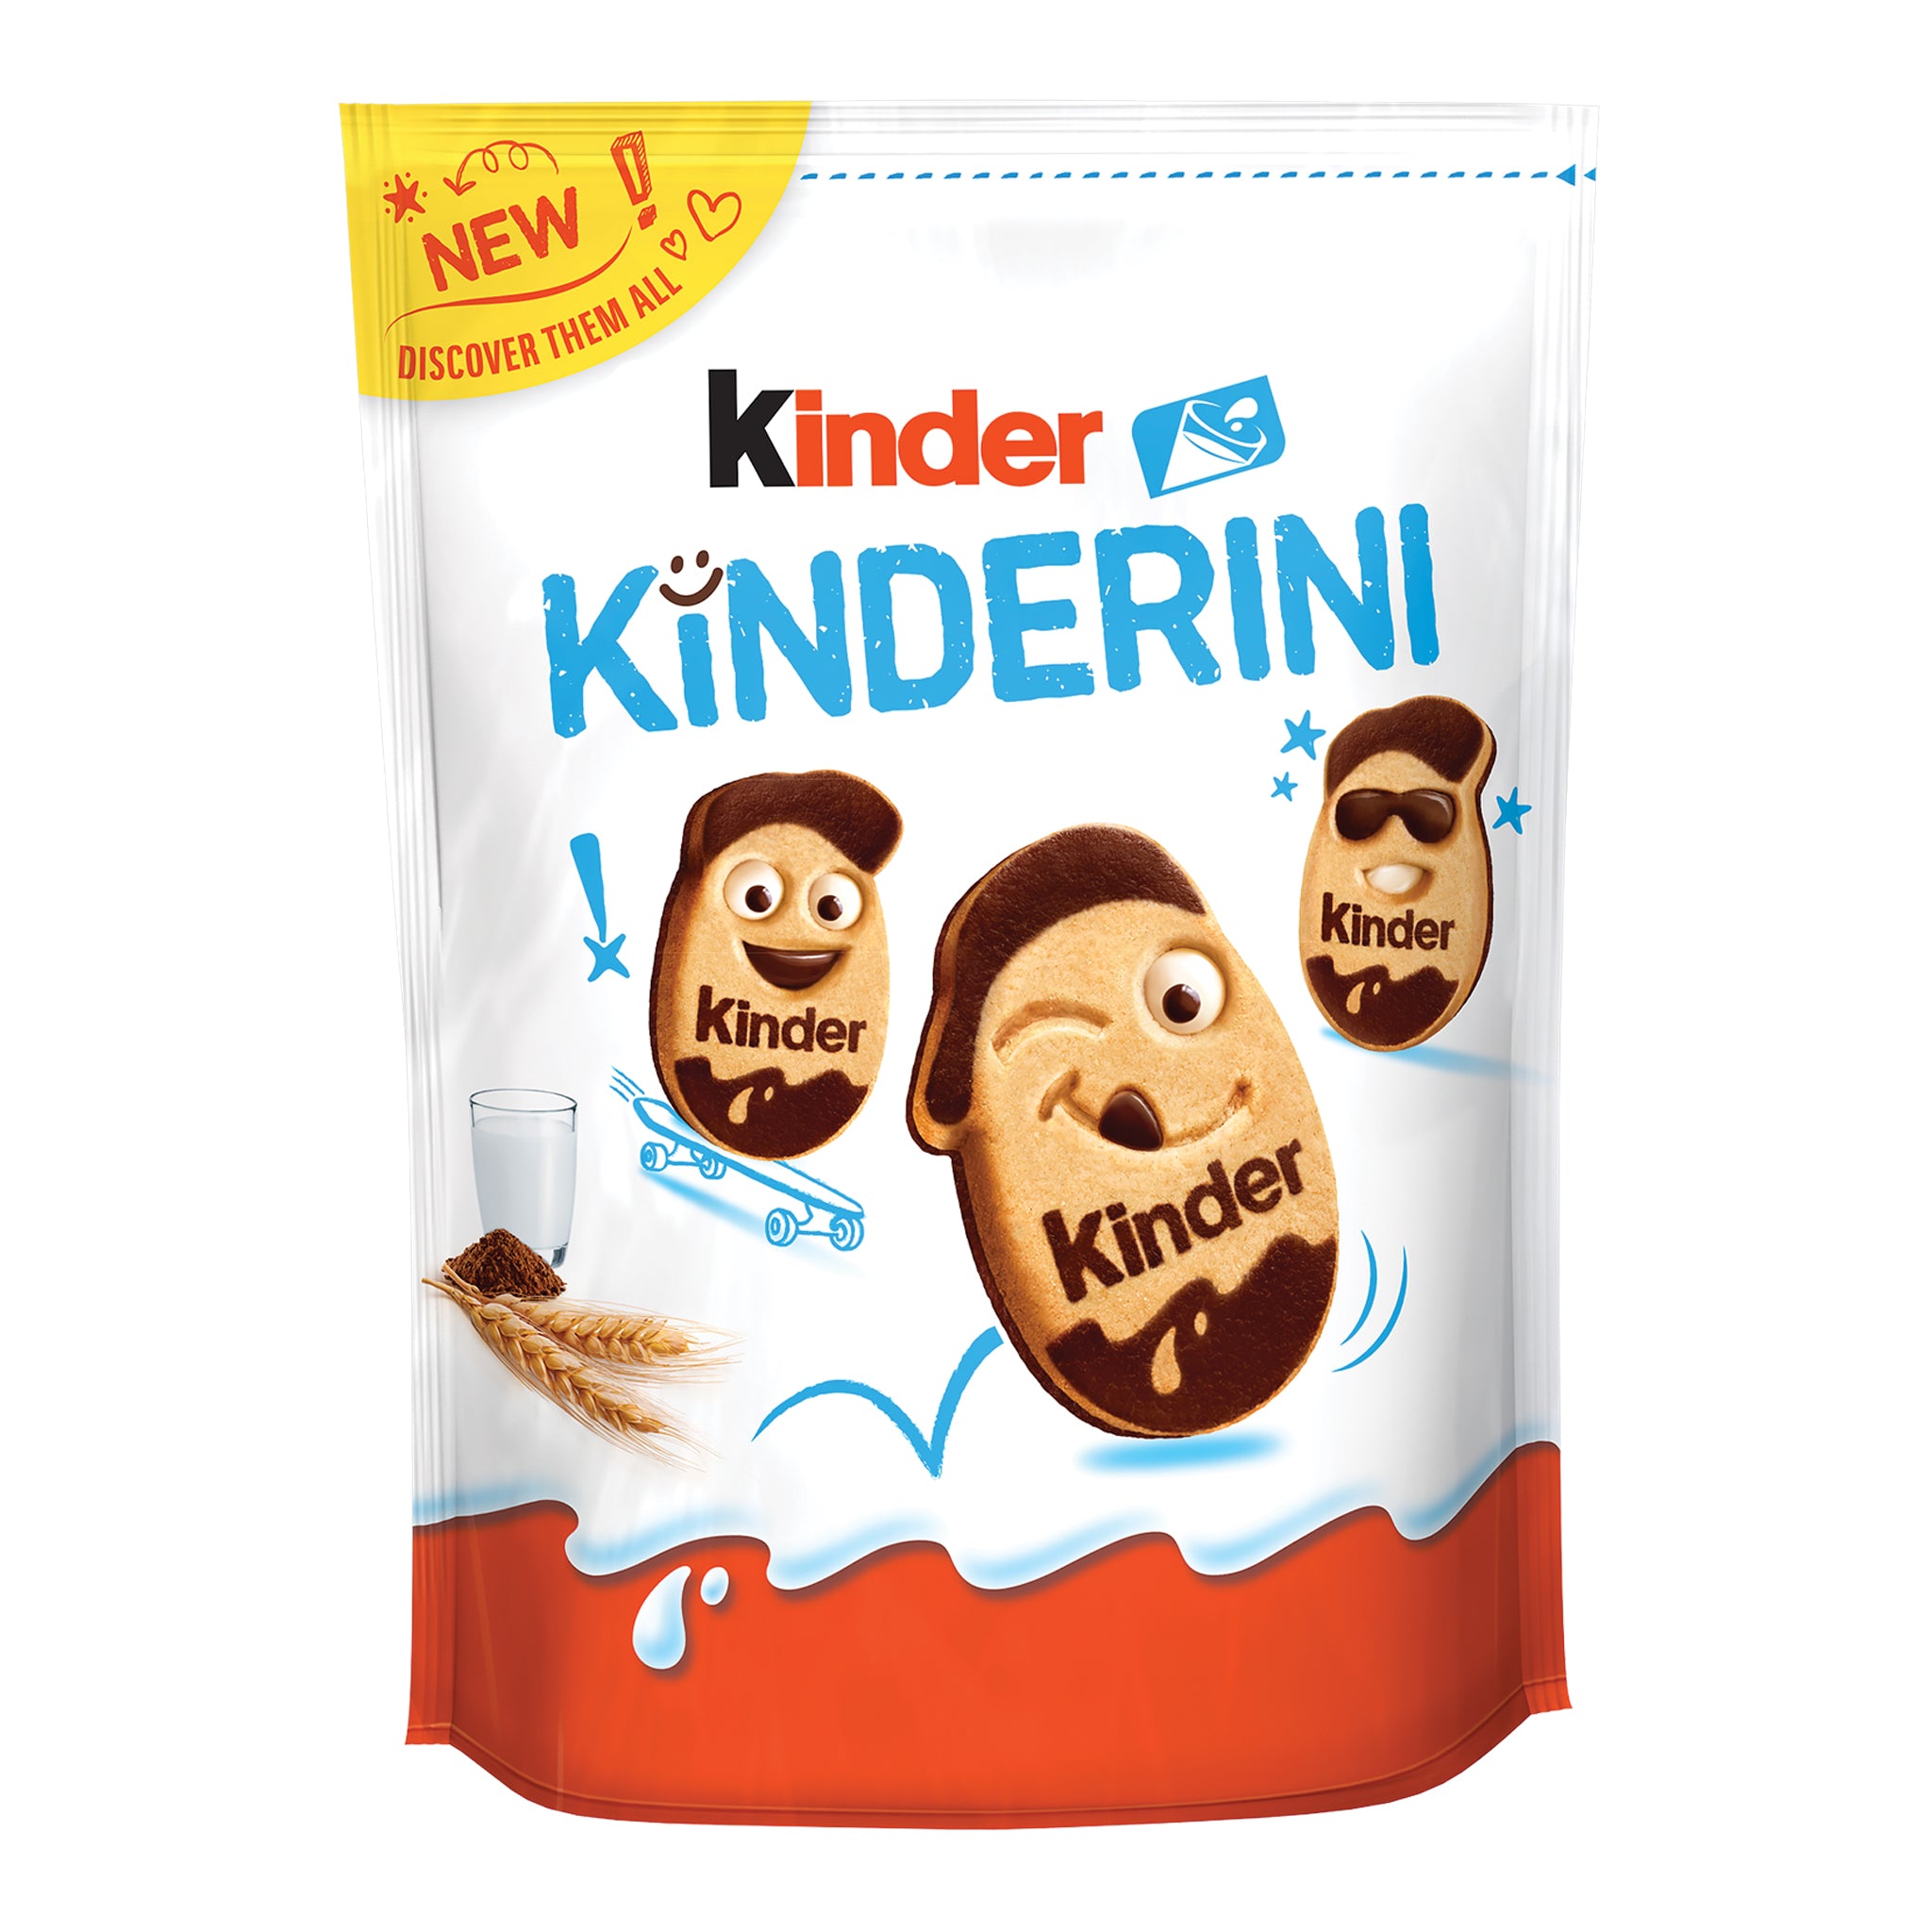 Kinderini Kinder Cookies - קינדריני עוגיות קינדר חדשות